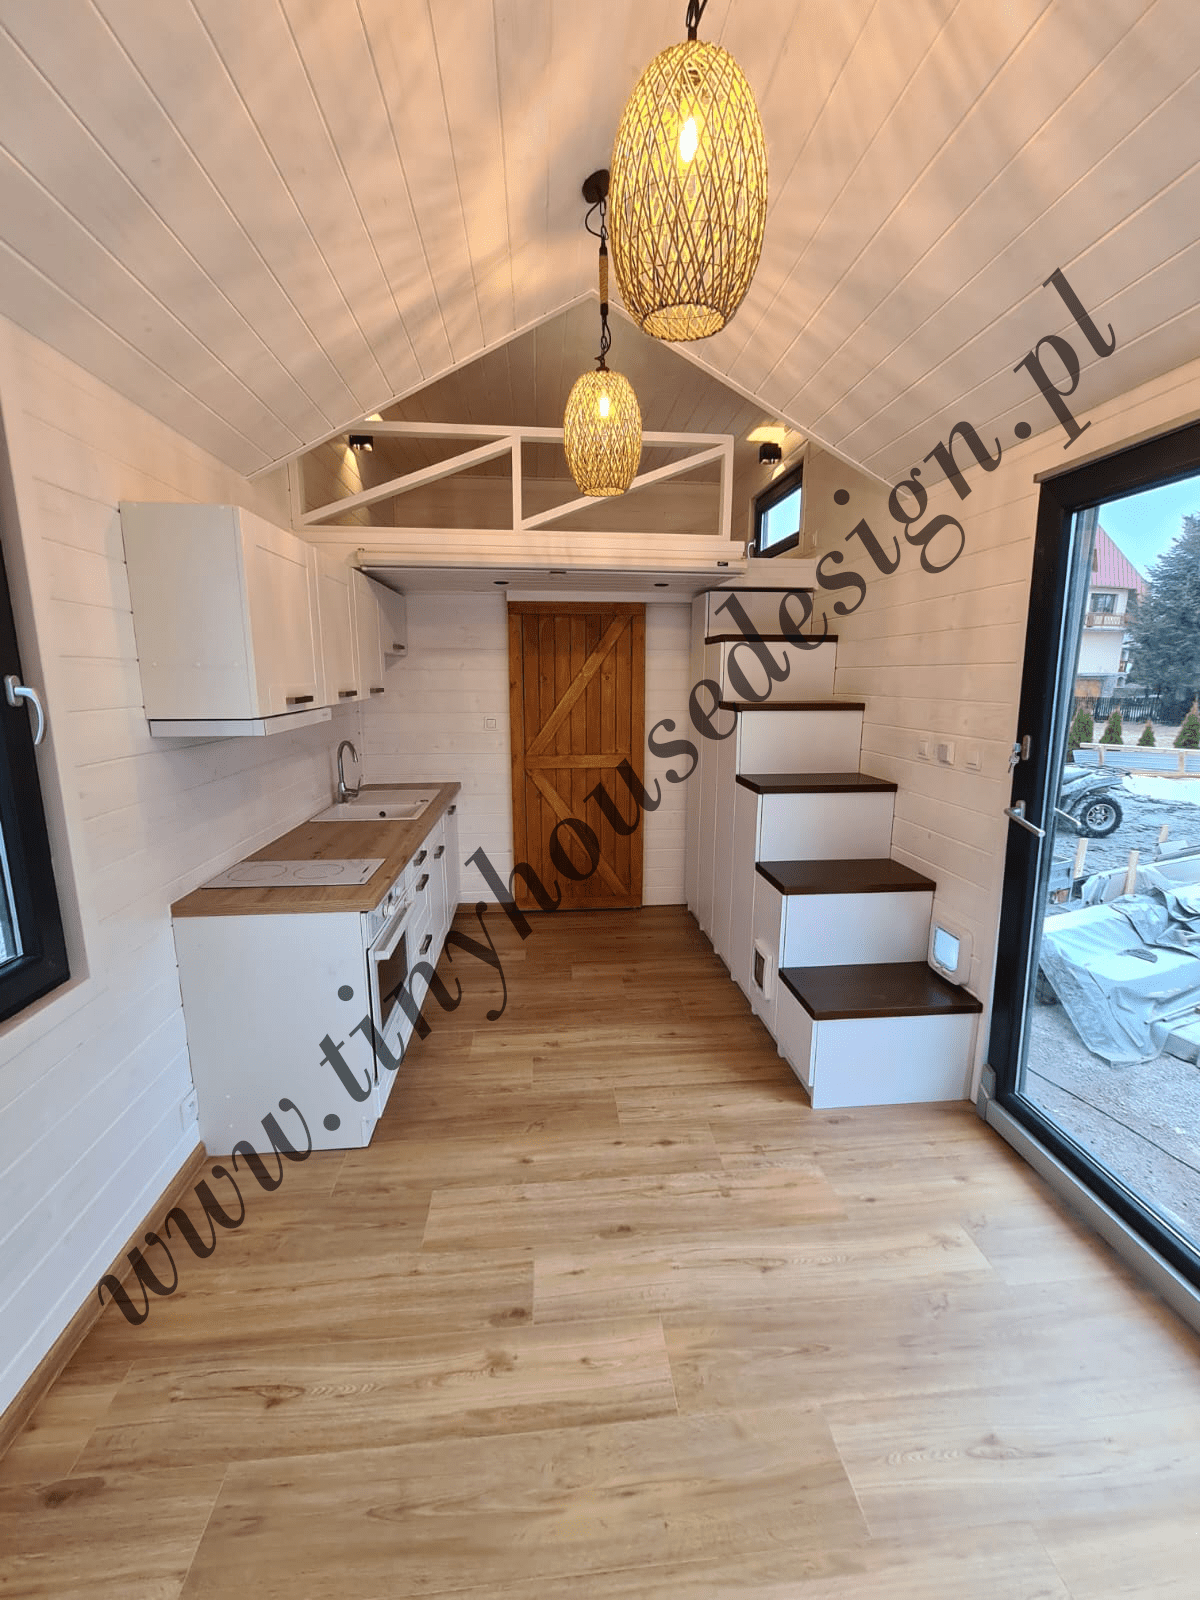 Wnętrze domku Tiny House Design - aneks kuchenny, antresola, schodki, na pierwszym planie lampy wiszące